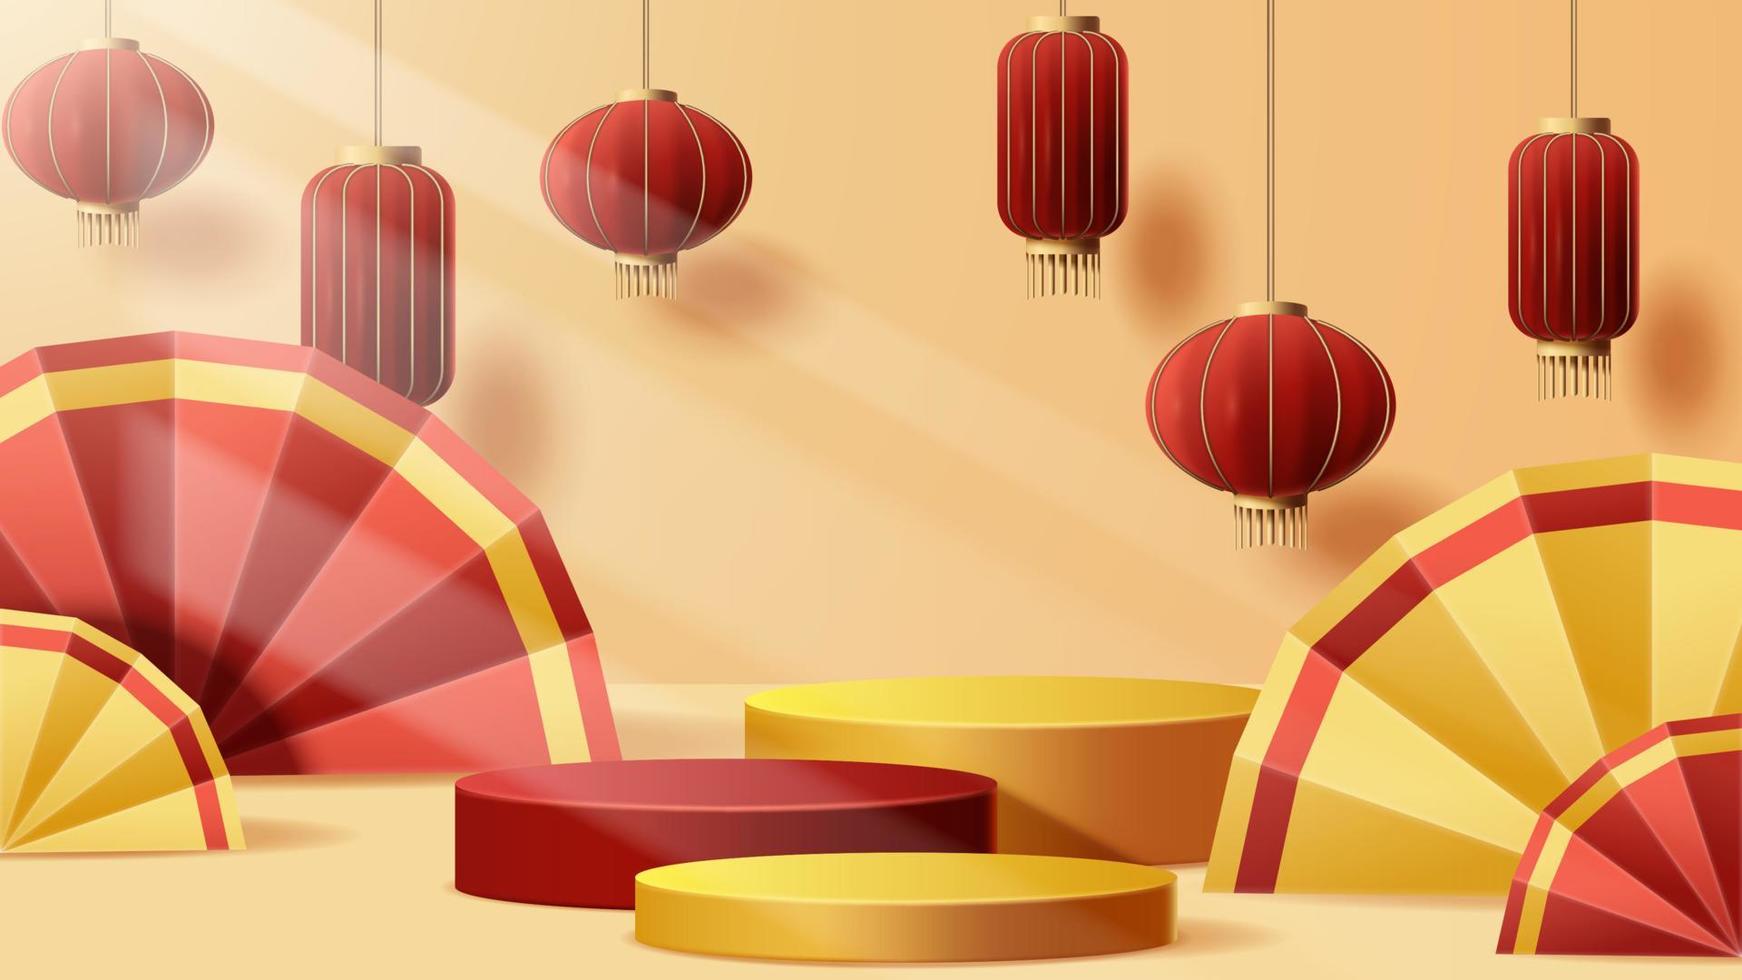 Cinese nuovo anno Schermo podio decorazione sfondo con Cinese ornamento. vettore 3d illustrazione